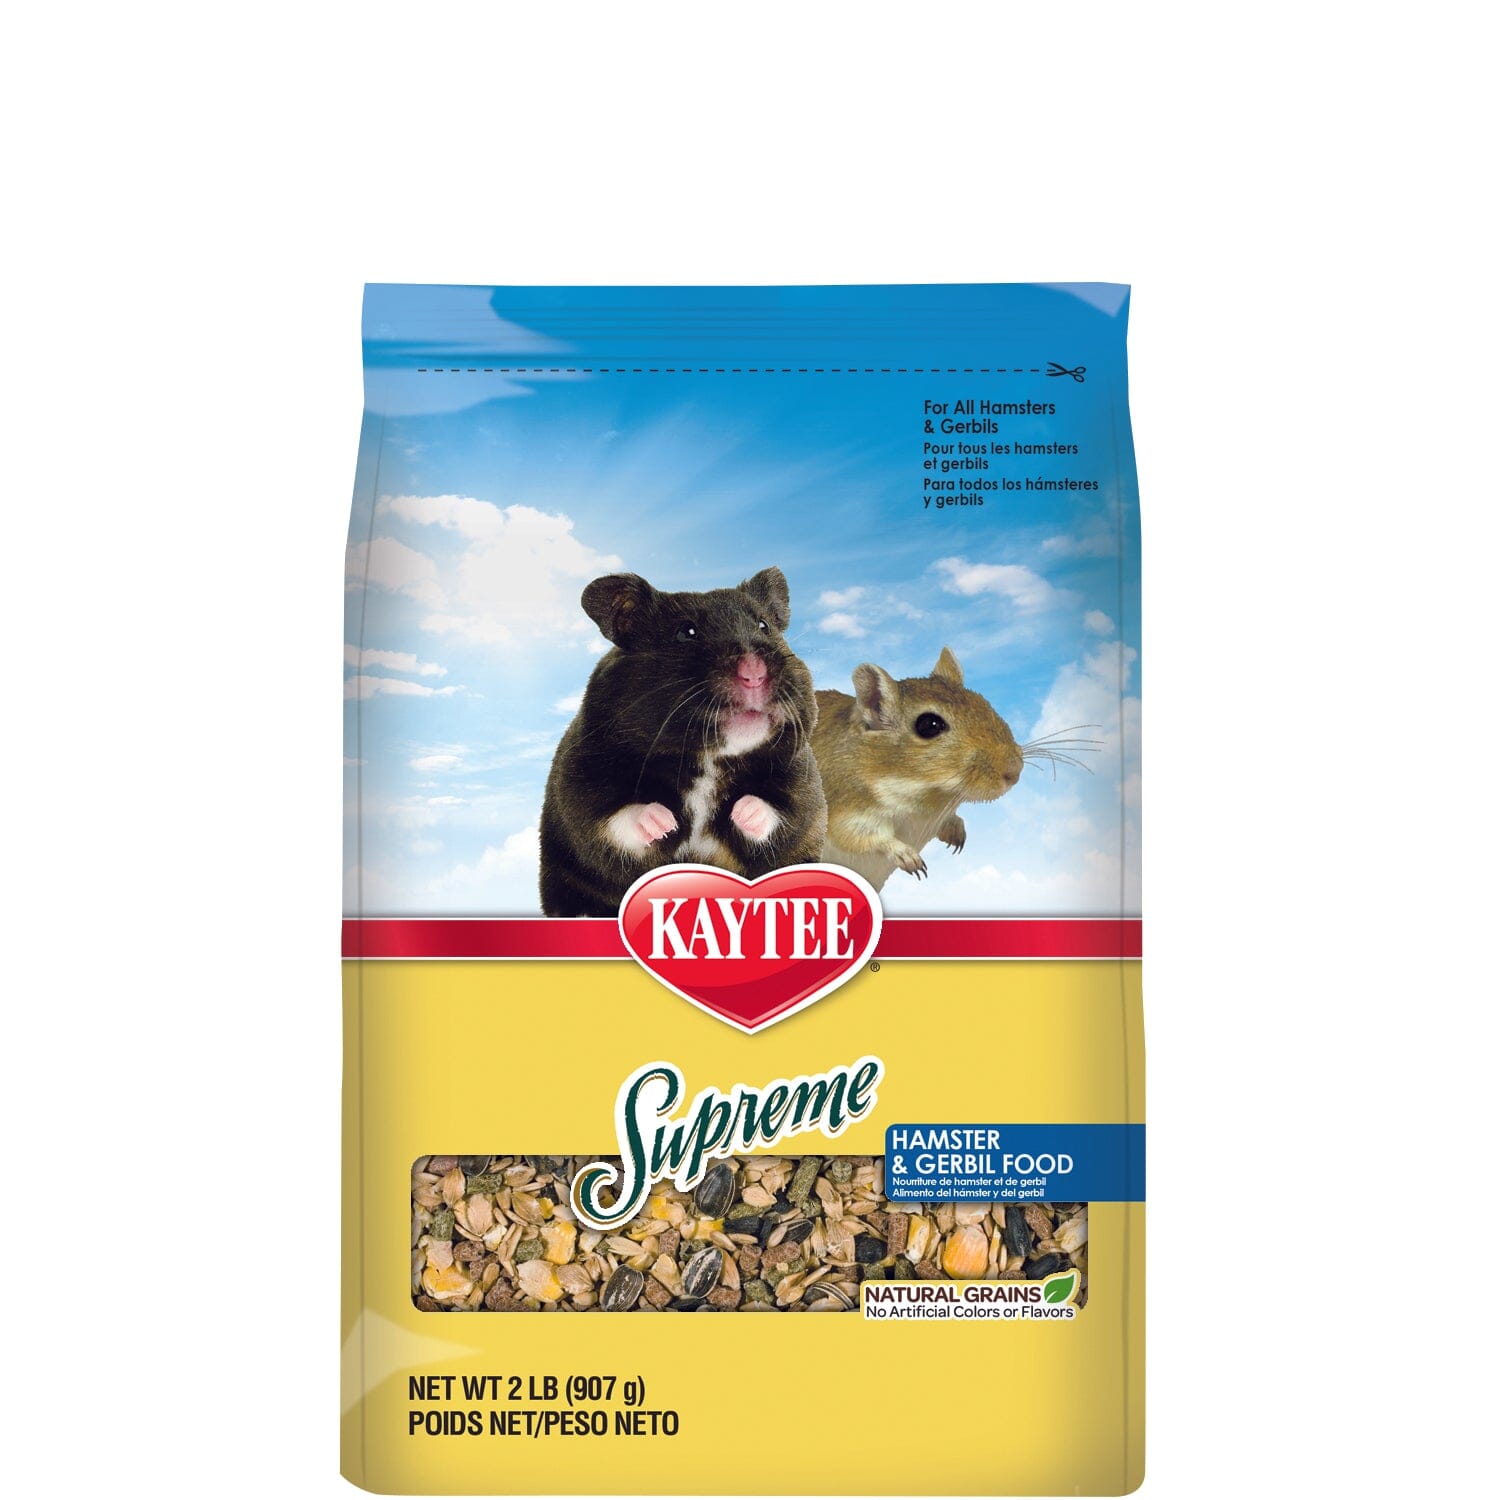 Kaytee Supreme Hamster and Gerbil Food - 2 lb  